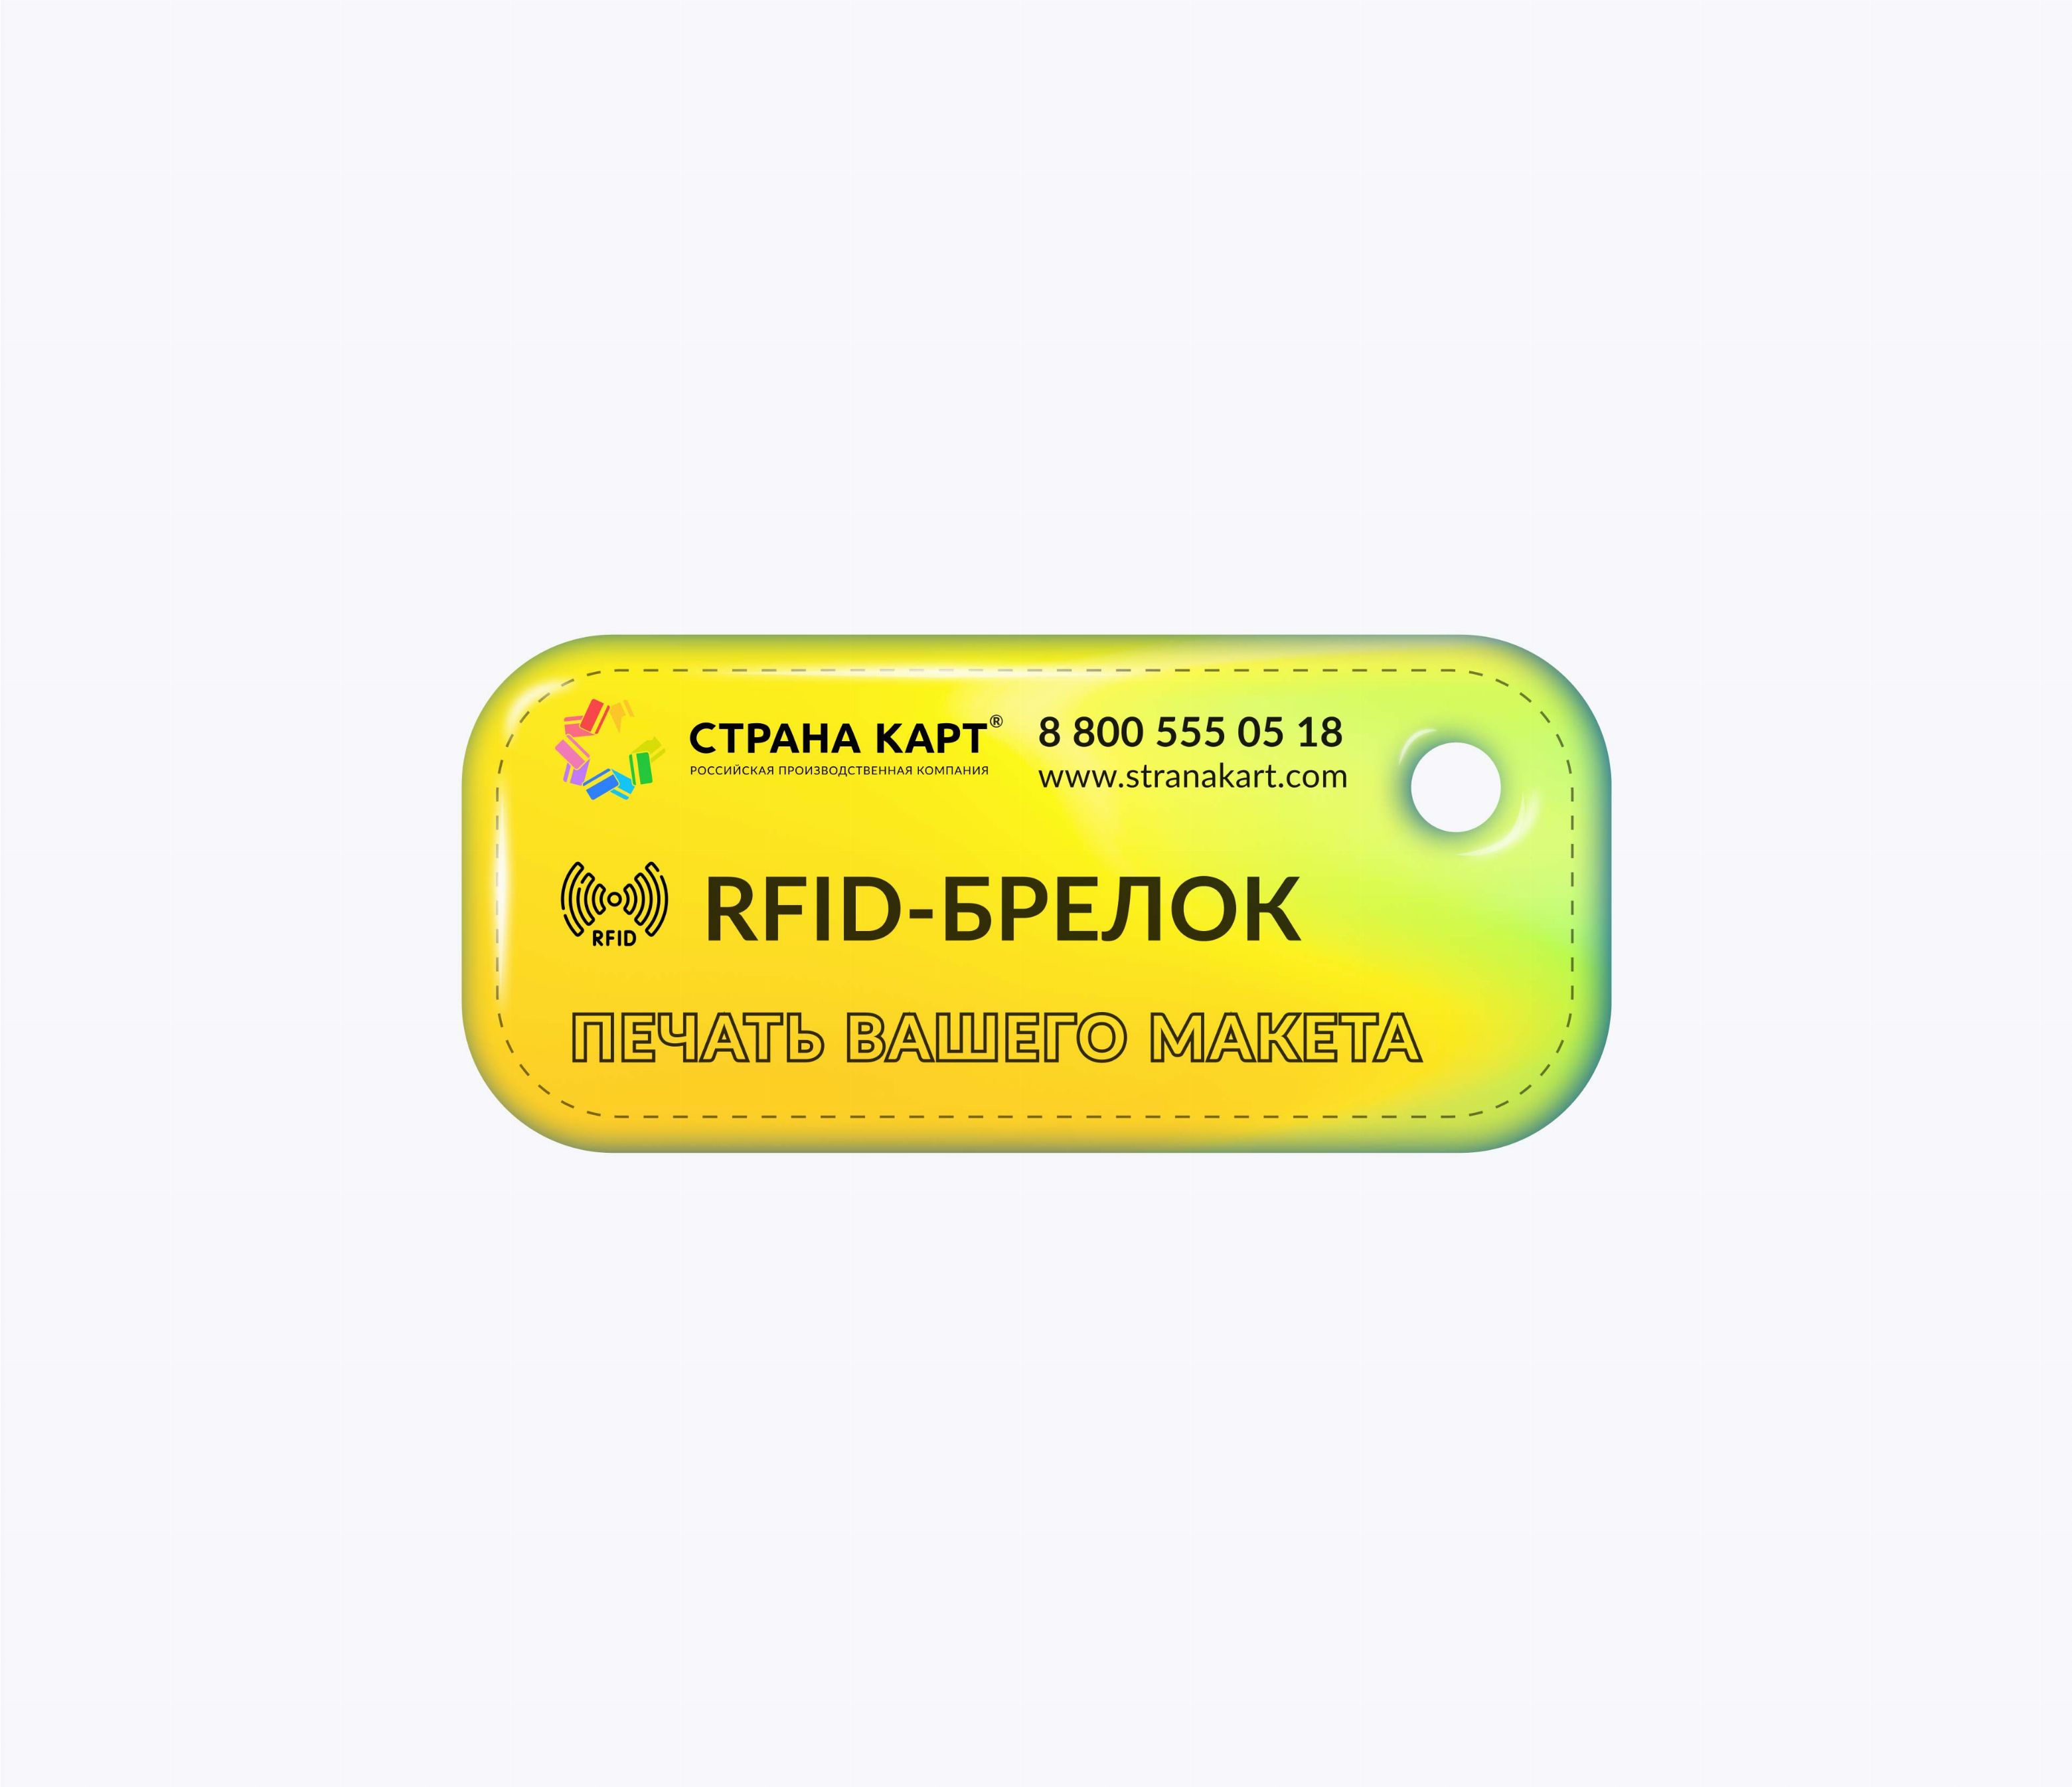 Прямоугольные мини RFID-брелоки NEOKEY® с чипом SMARTTAG 1k 7 byte UID RFID-брелоки NEOKEY® с чипом SMARTTAG 1k 7 byte UID